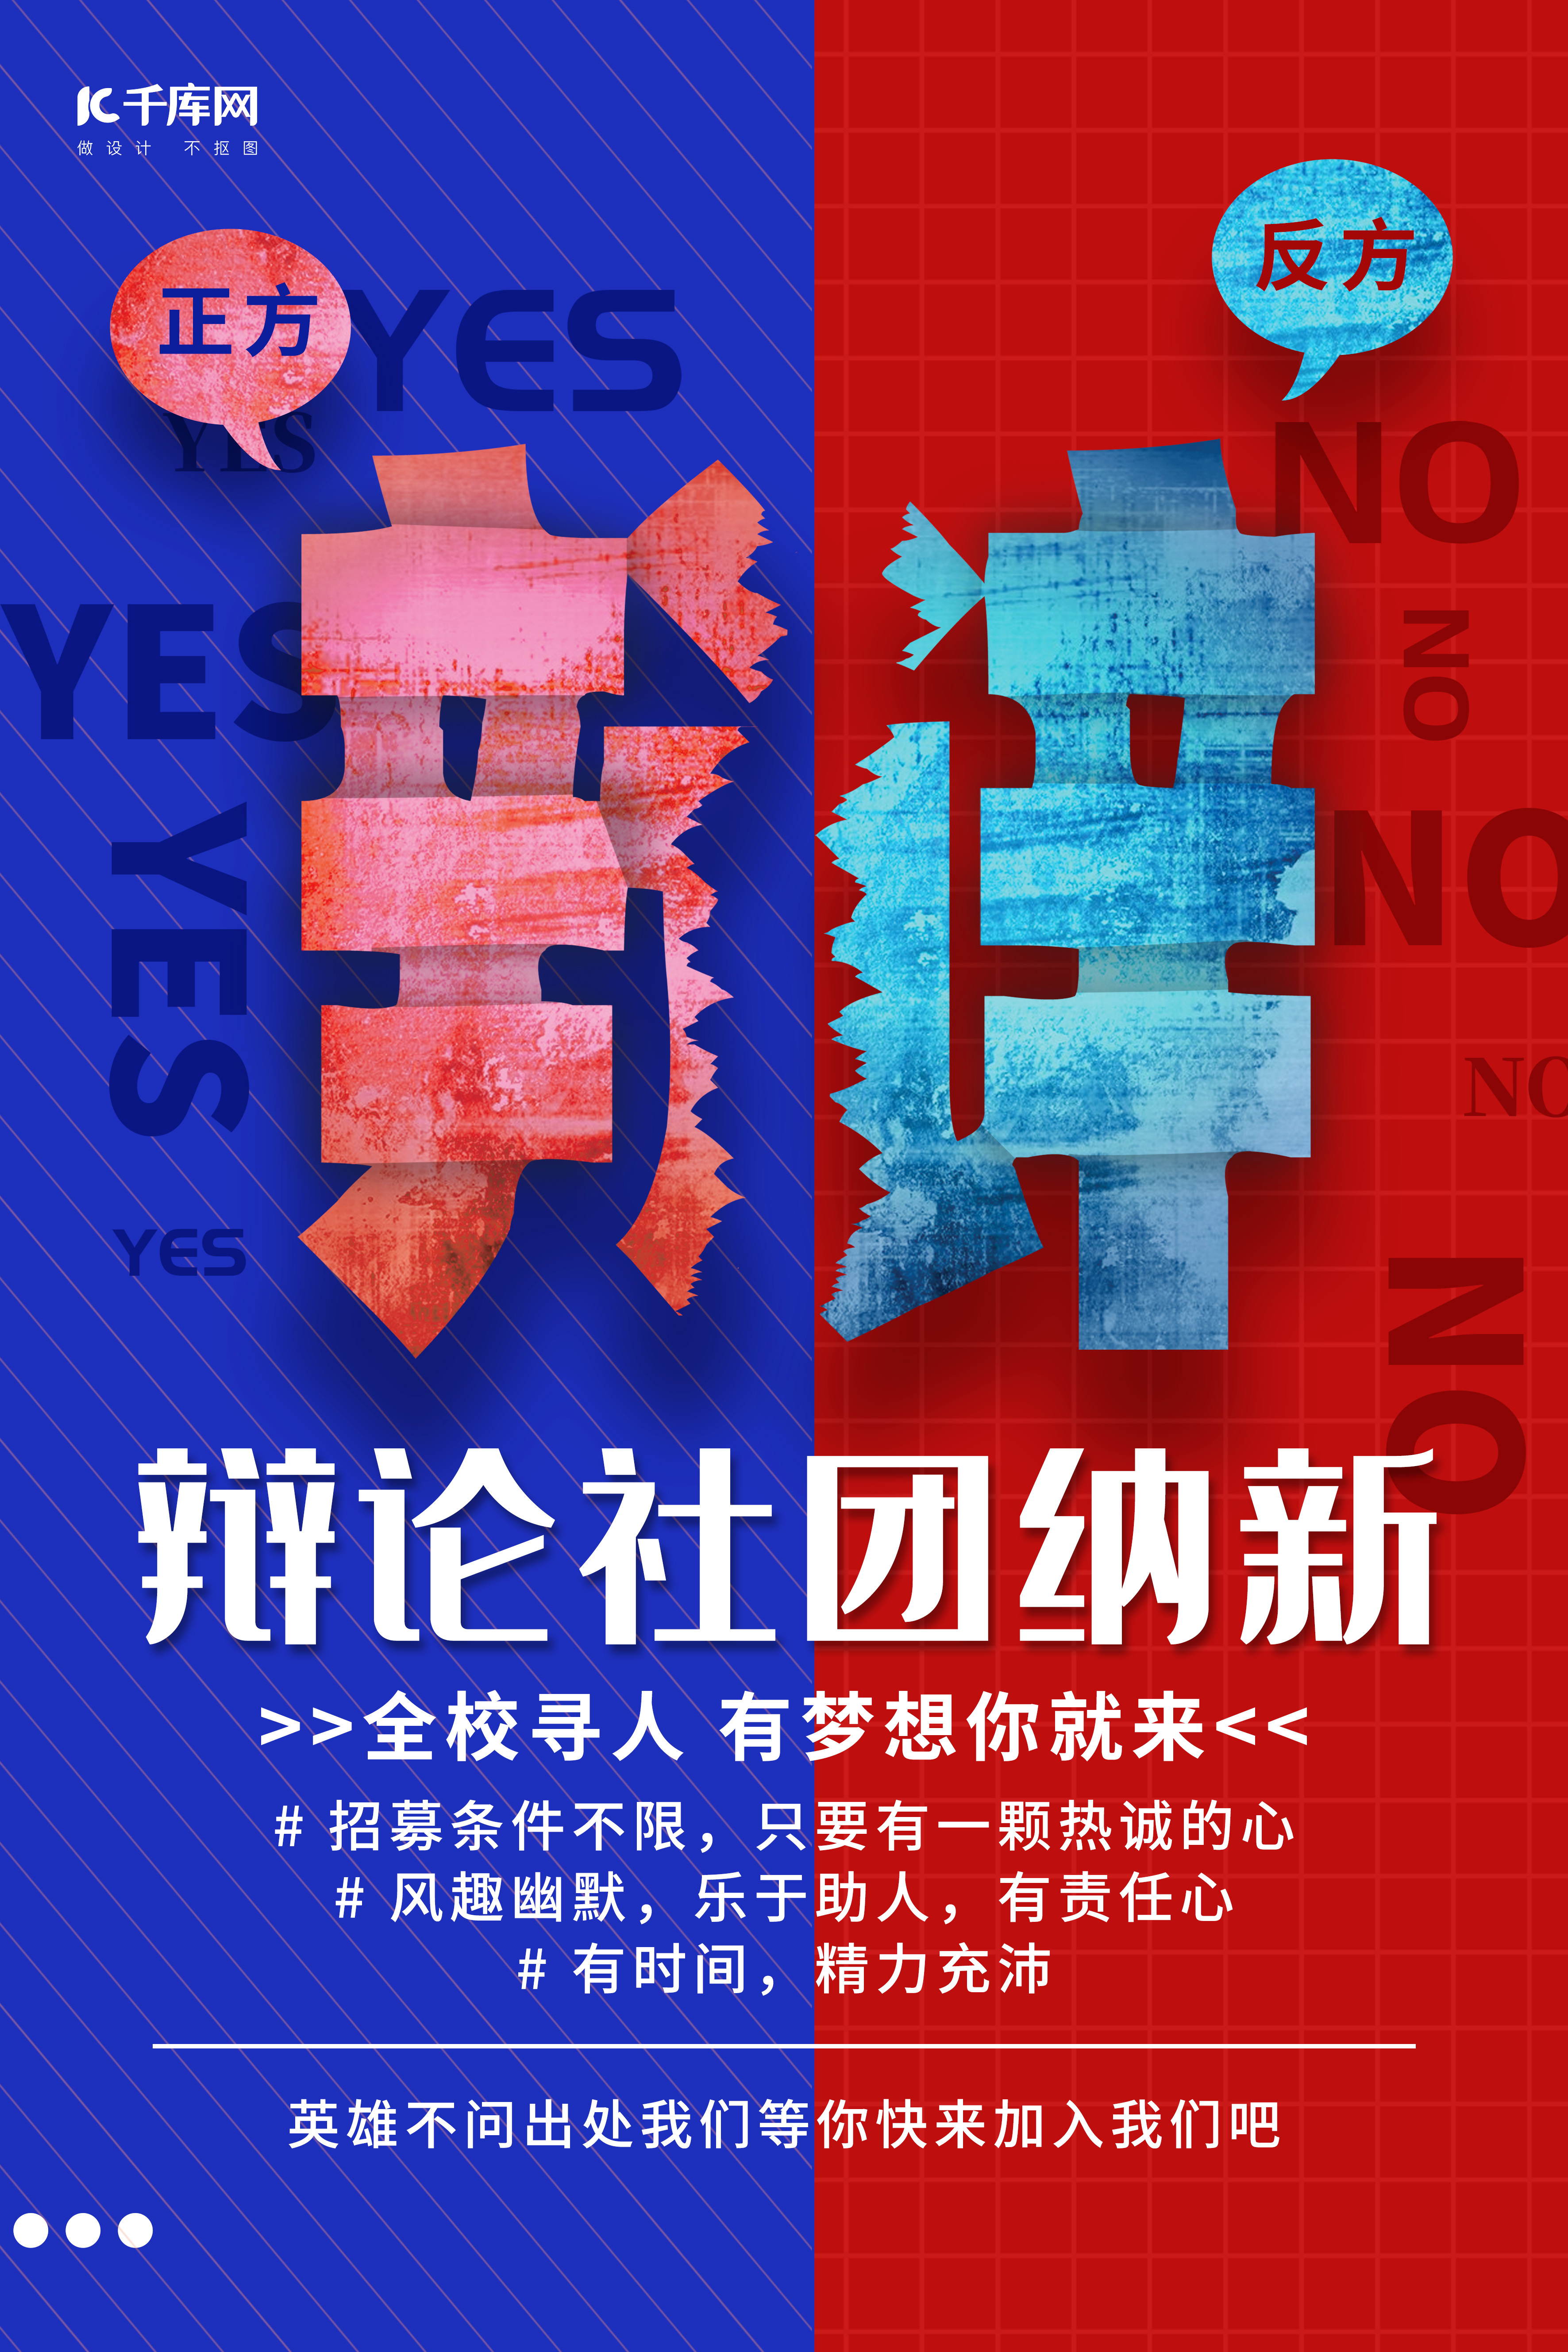 辩论社招新辩字蓝红色调简约风格海报演讲比赛图片